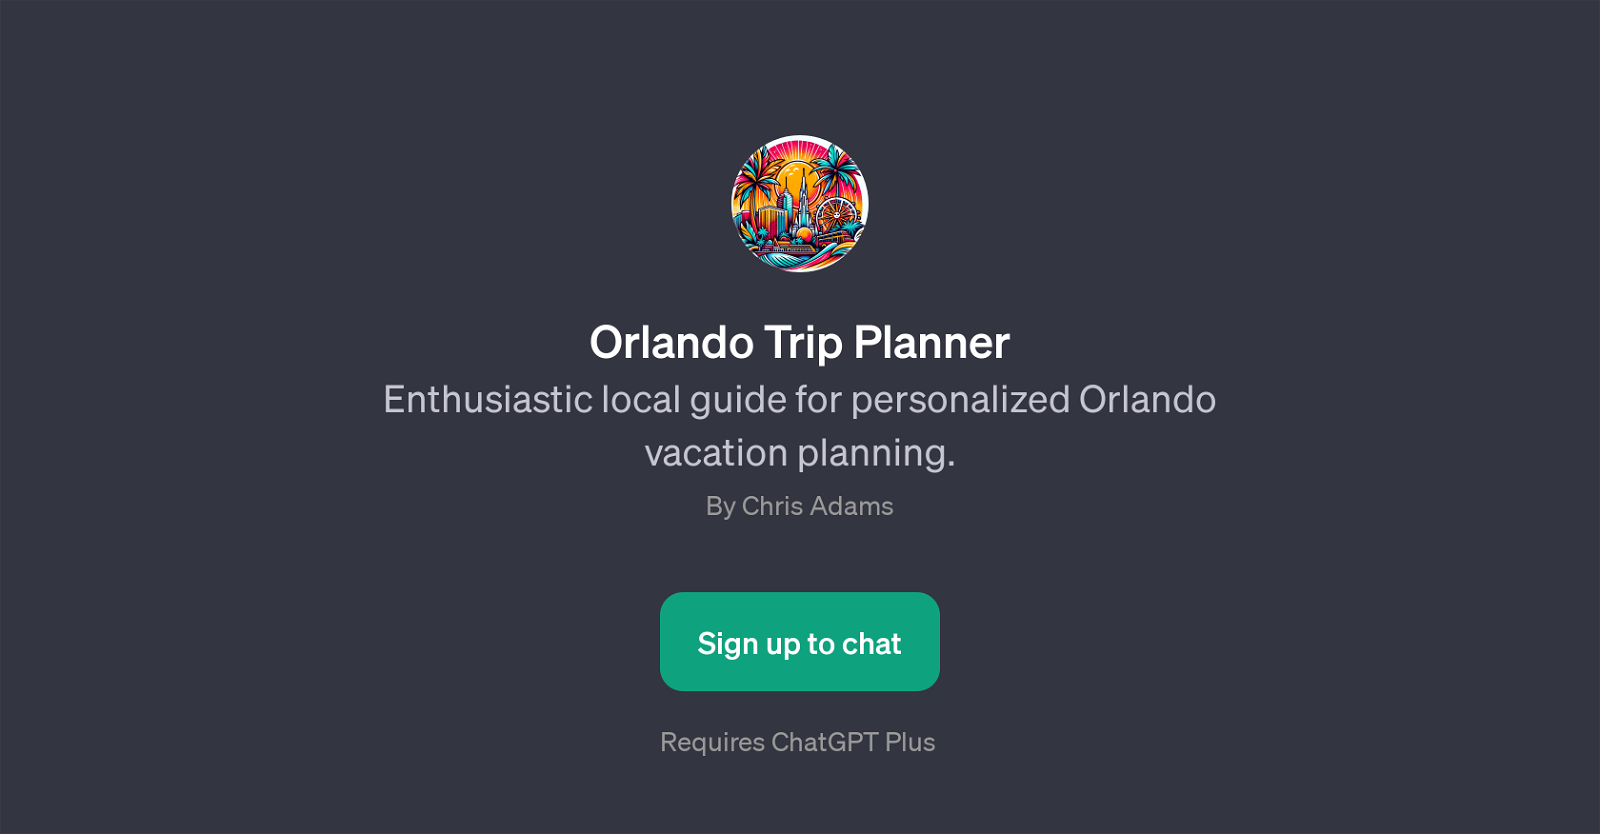 Orlando Trip Planner website